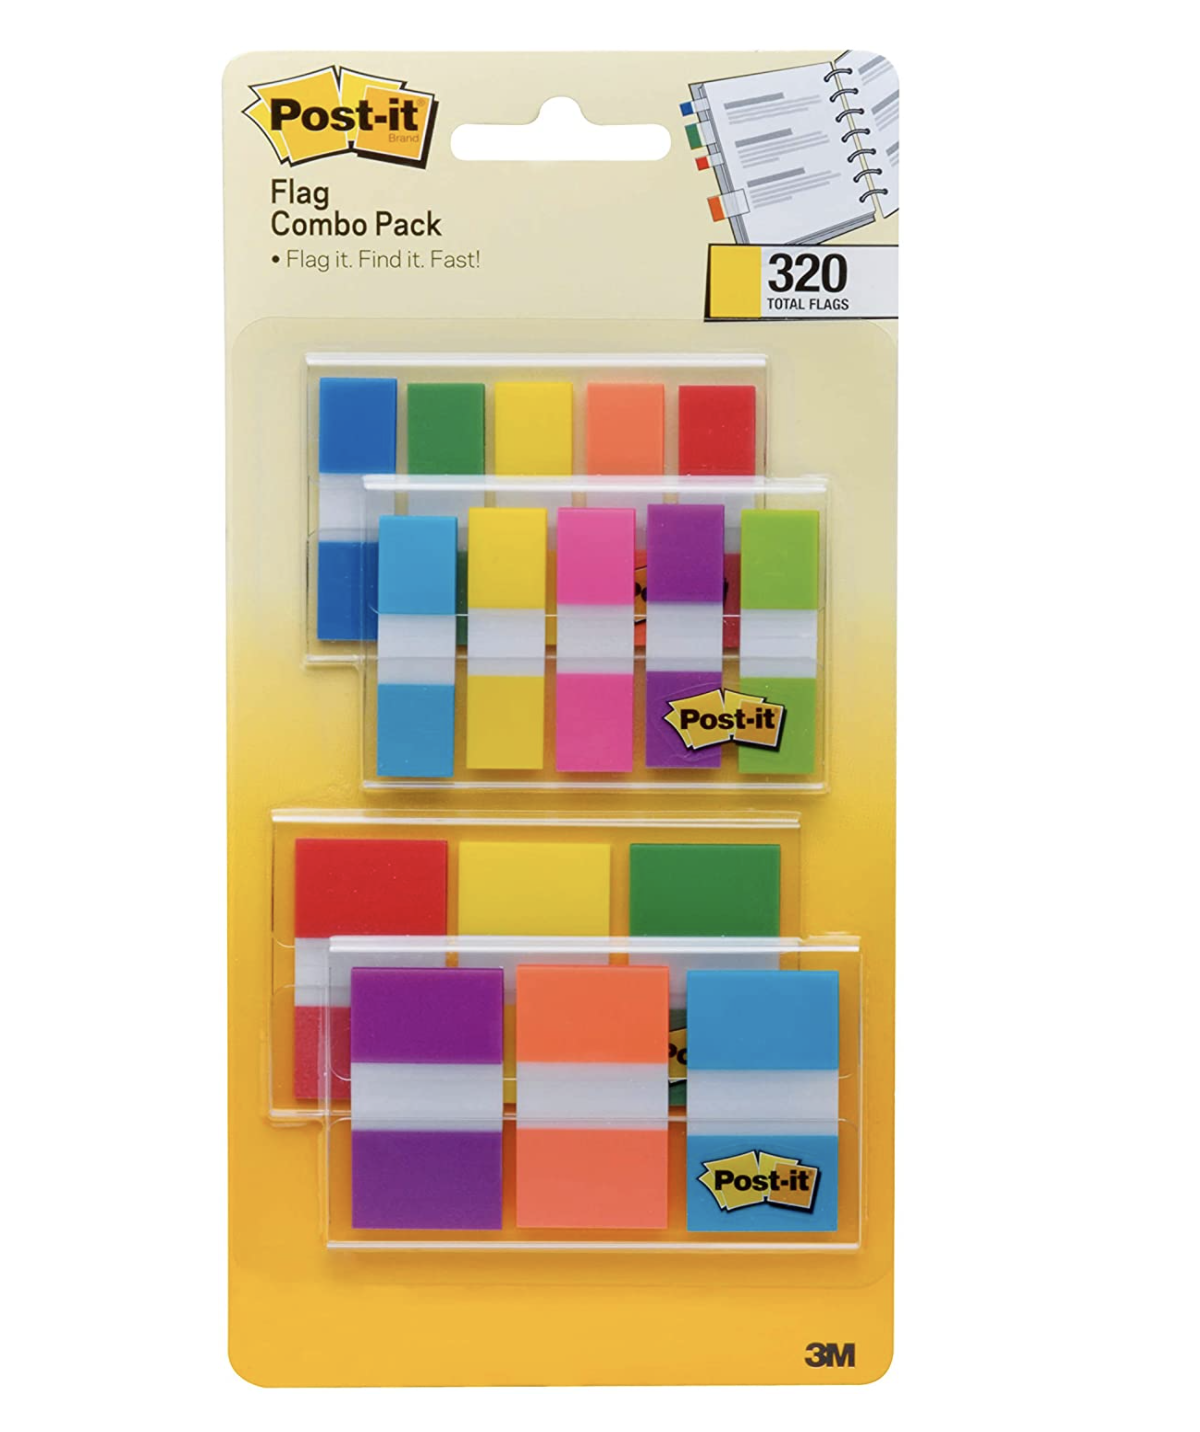 paquete con 320 banderitas adhesivas de colores